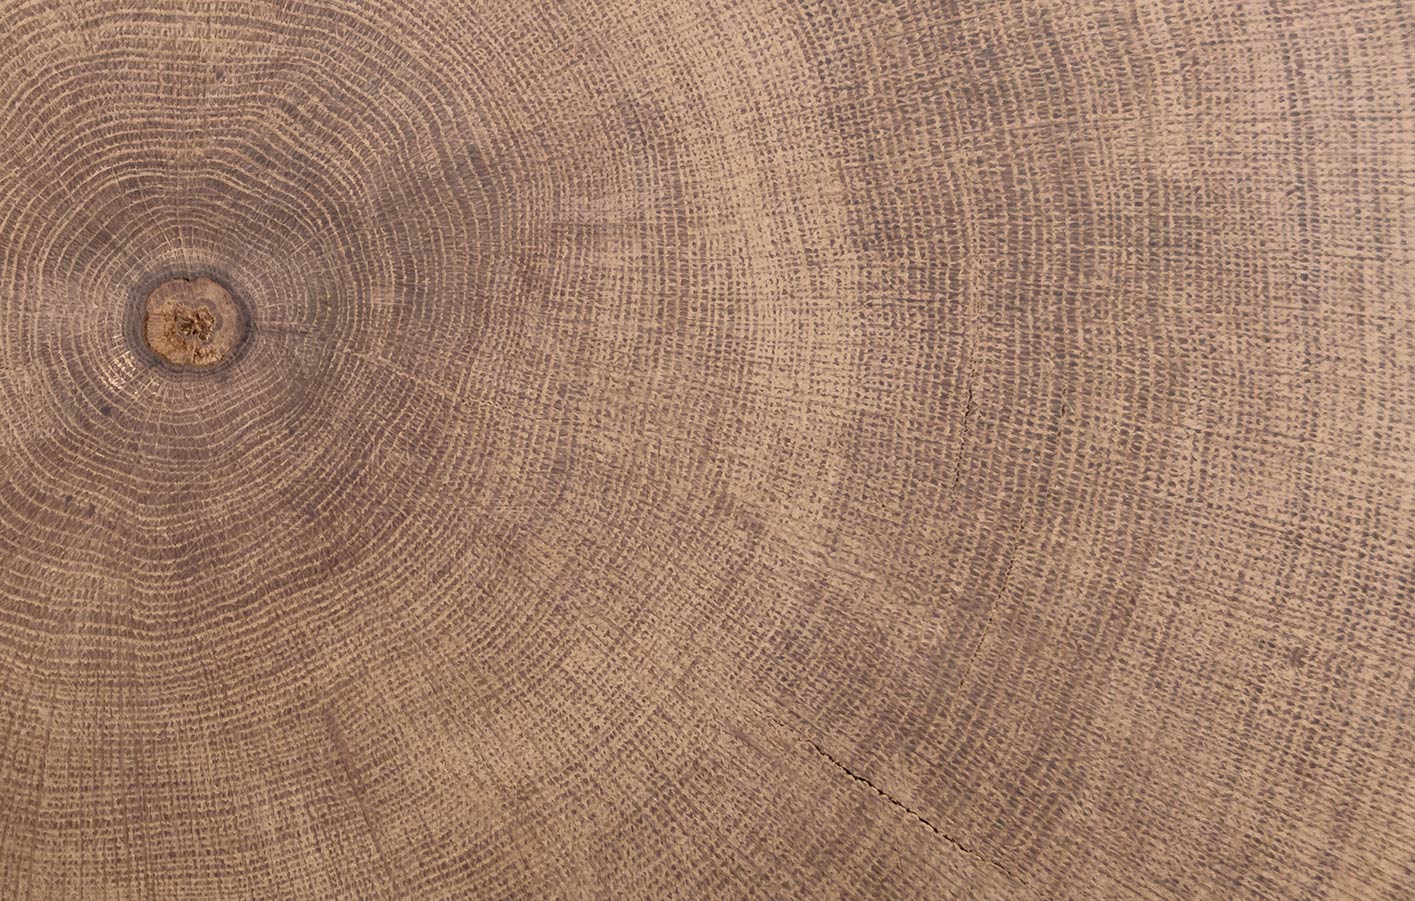 Wichtige Experten Tipps im Holz-Ratgeber: Alles zu Material von A bis Z. Wir klären auf, welches Holz sich für Ihre Fassade eignet.